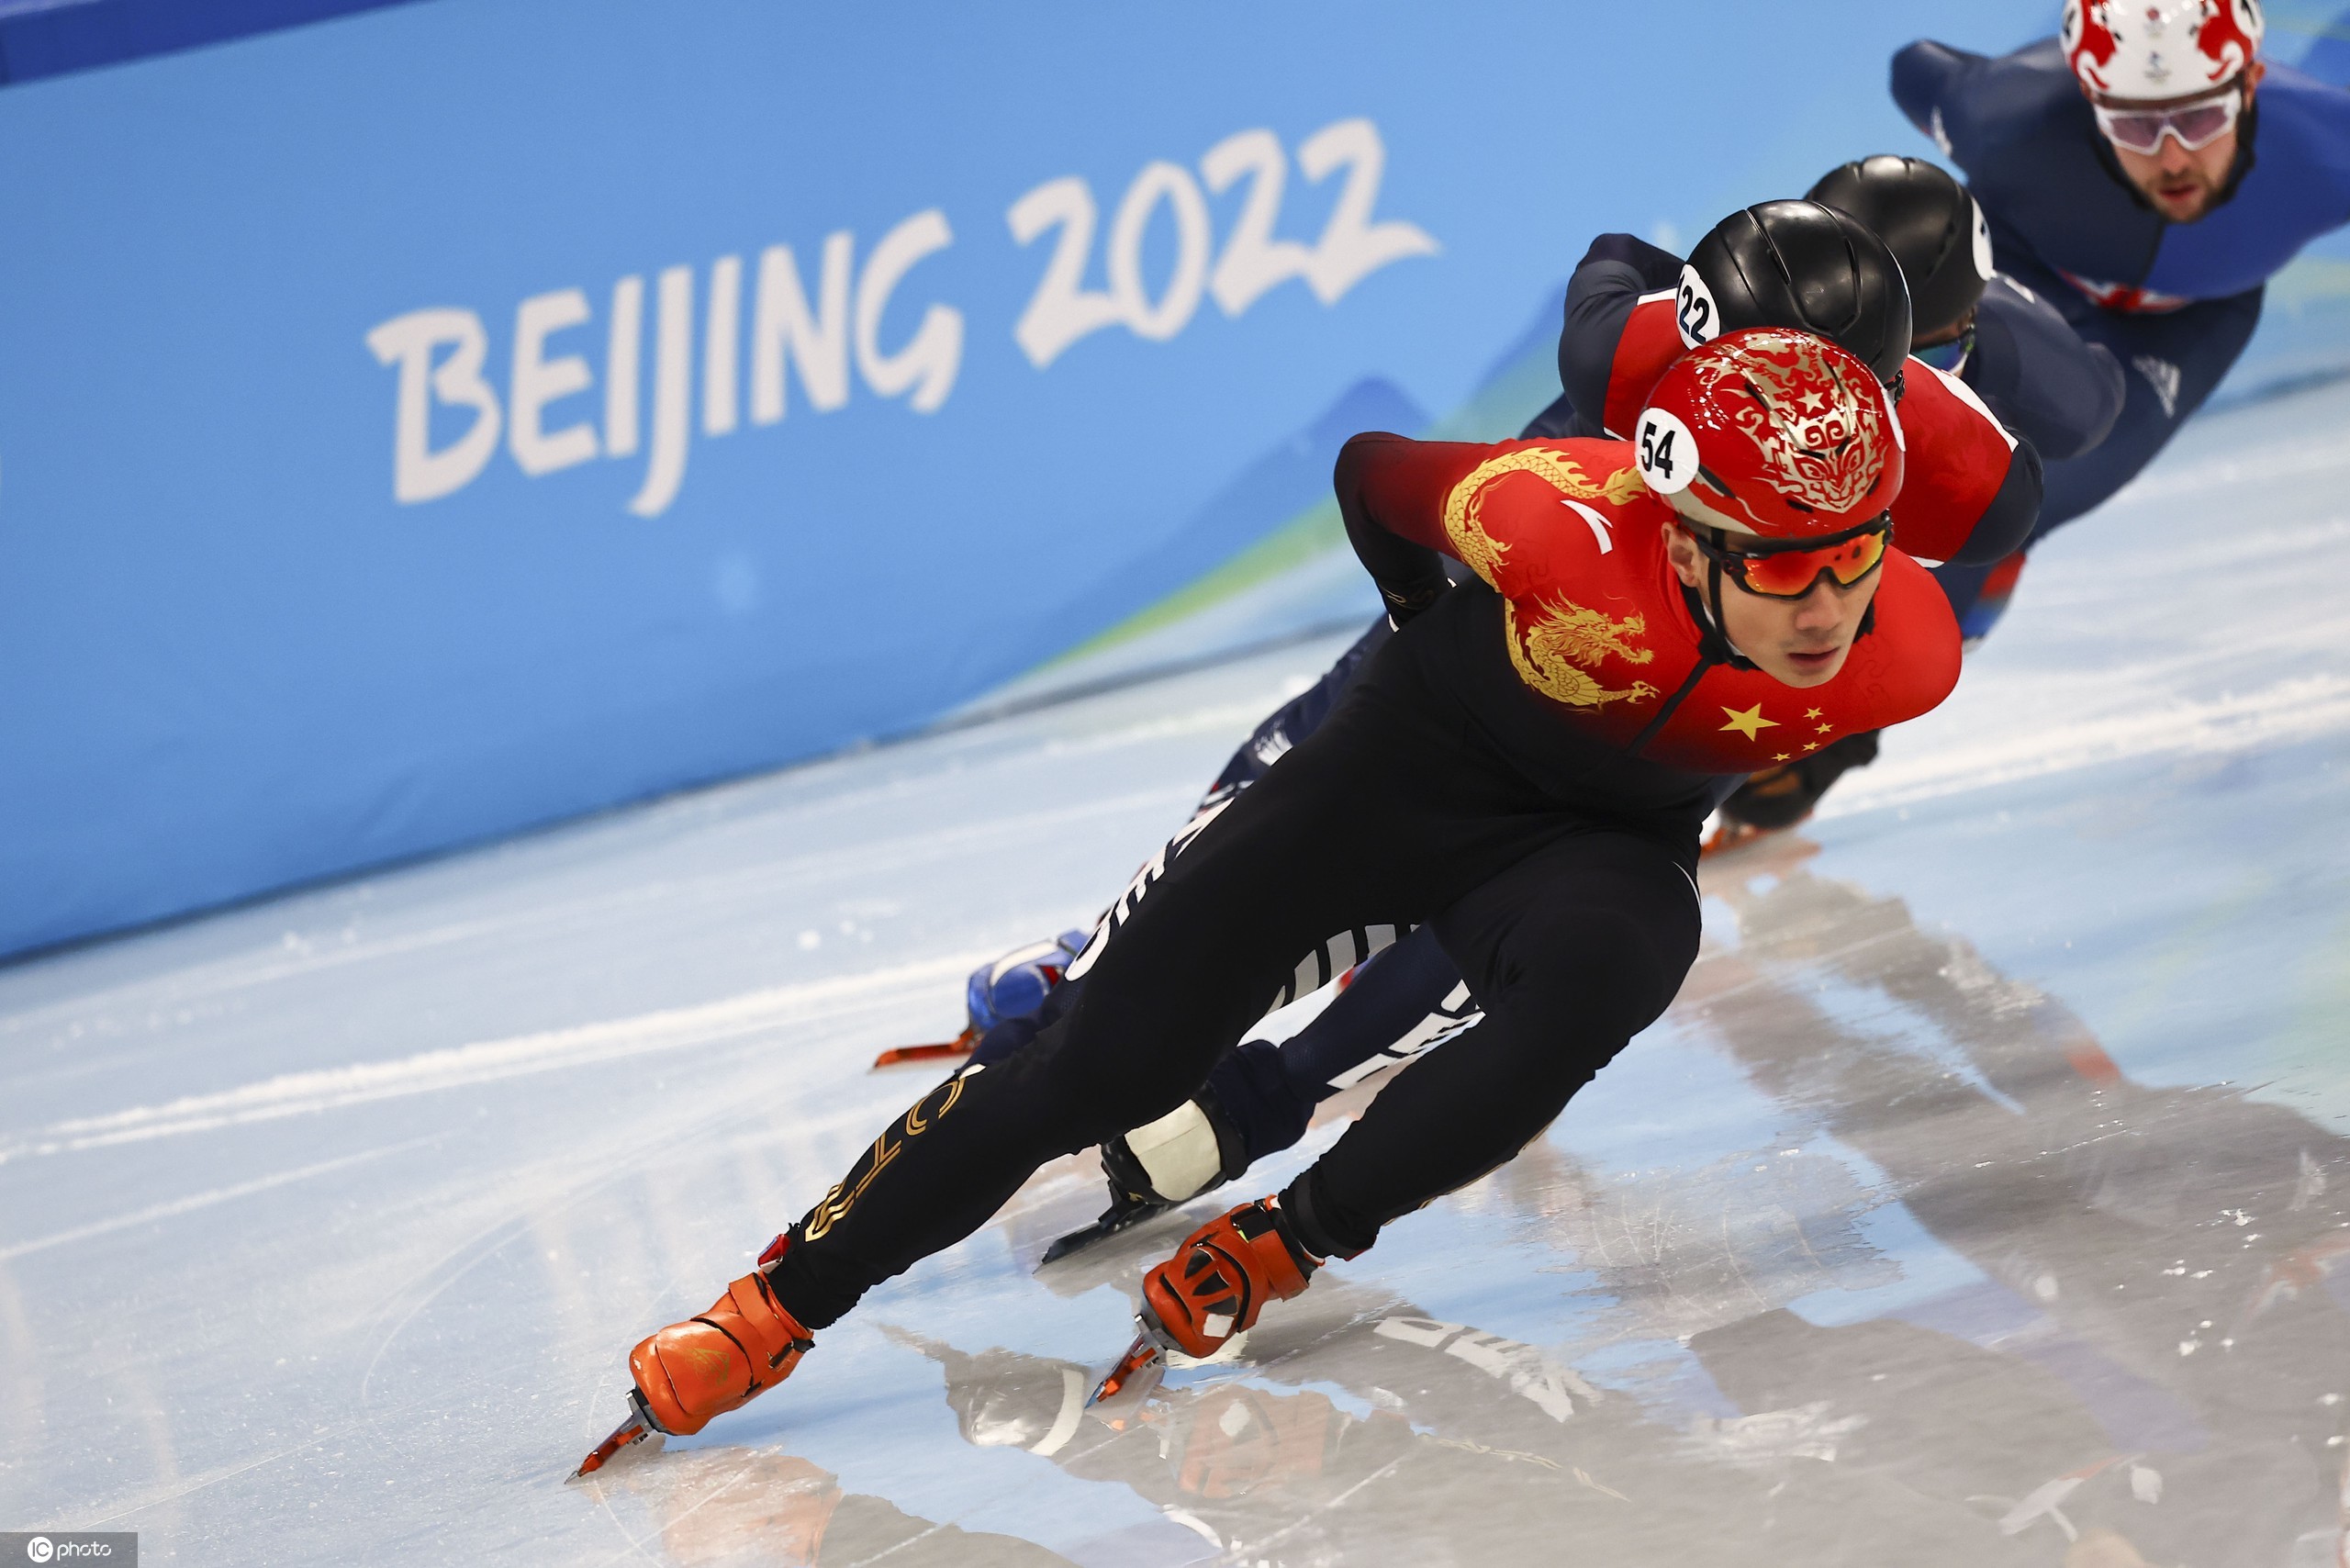 中国短道速滑队个人项目全员晋级2外国选手刷新奥运纪录